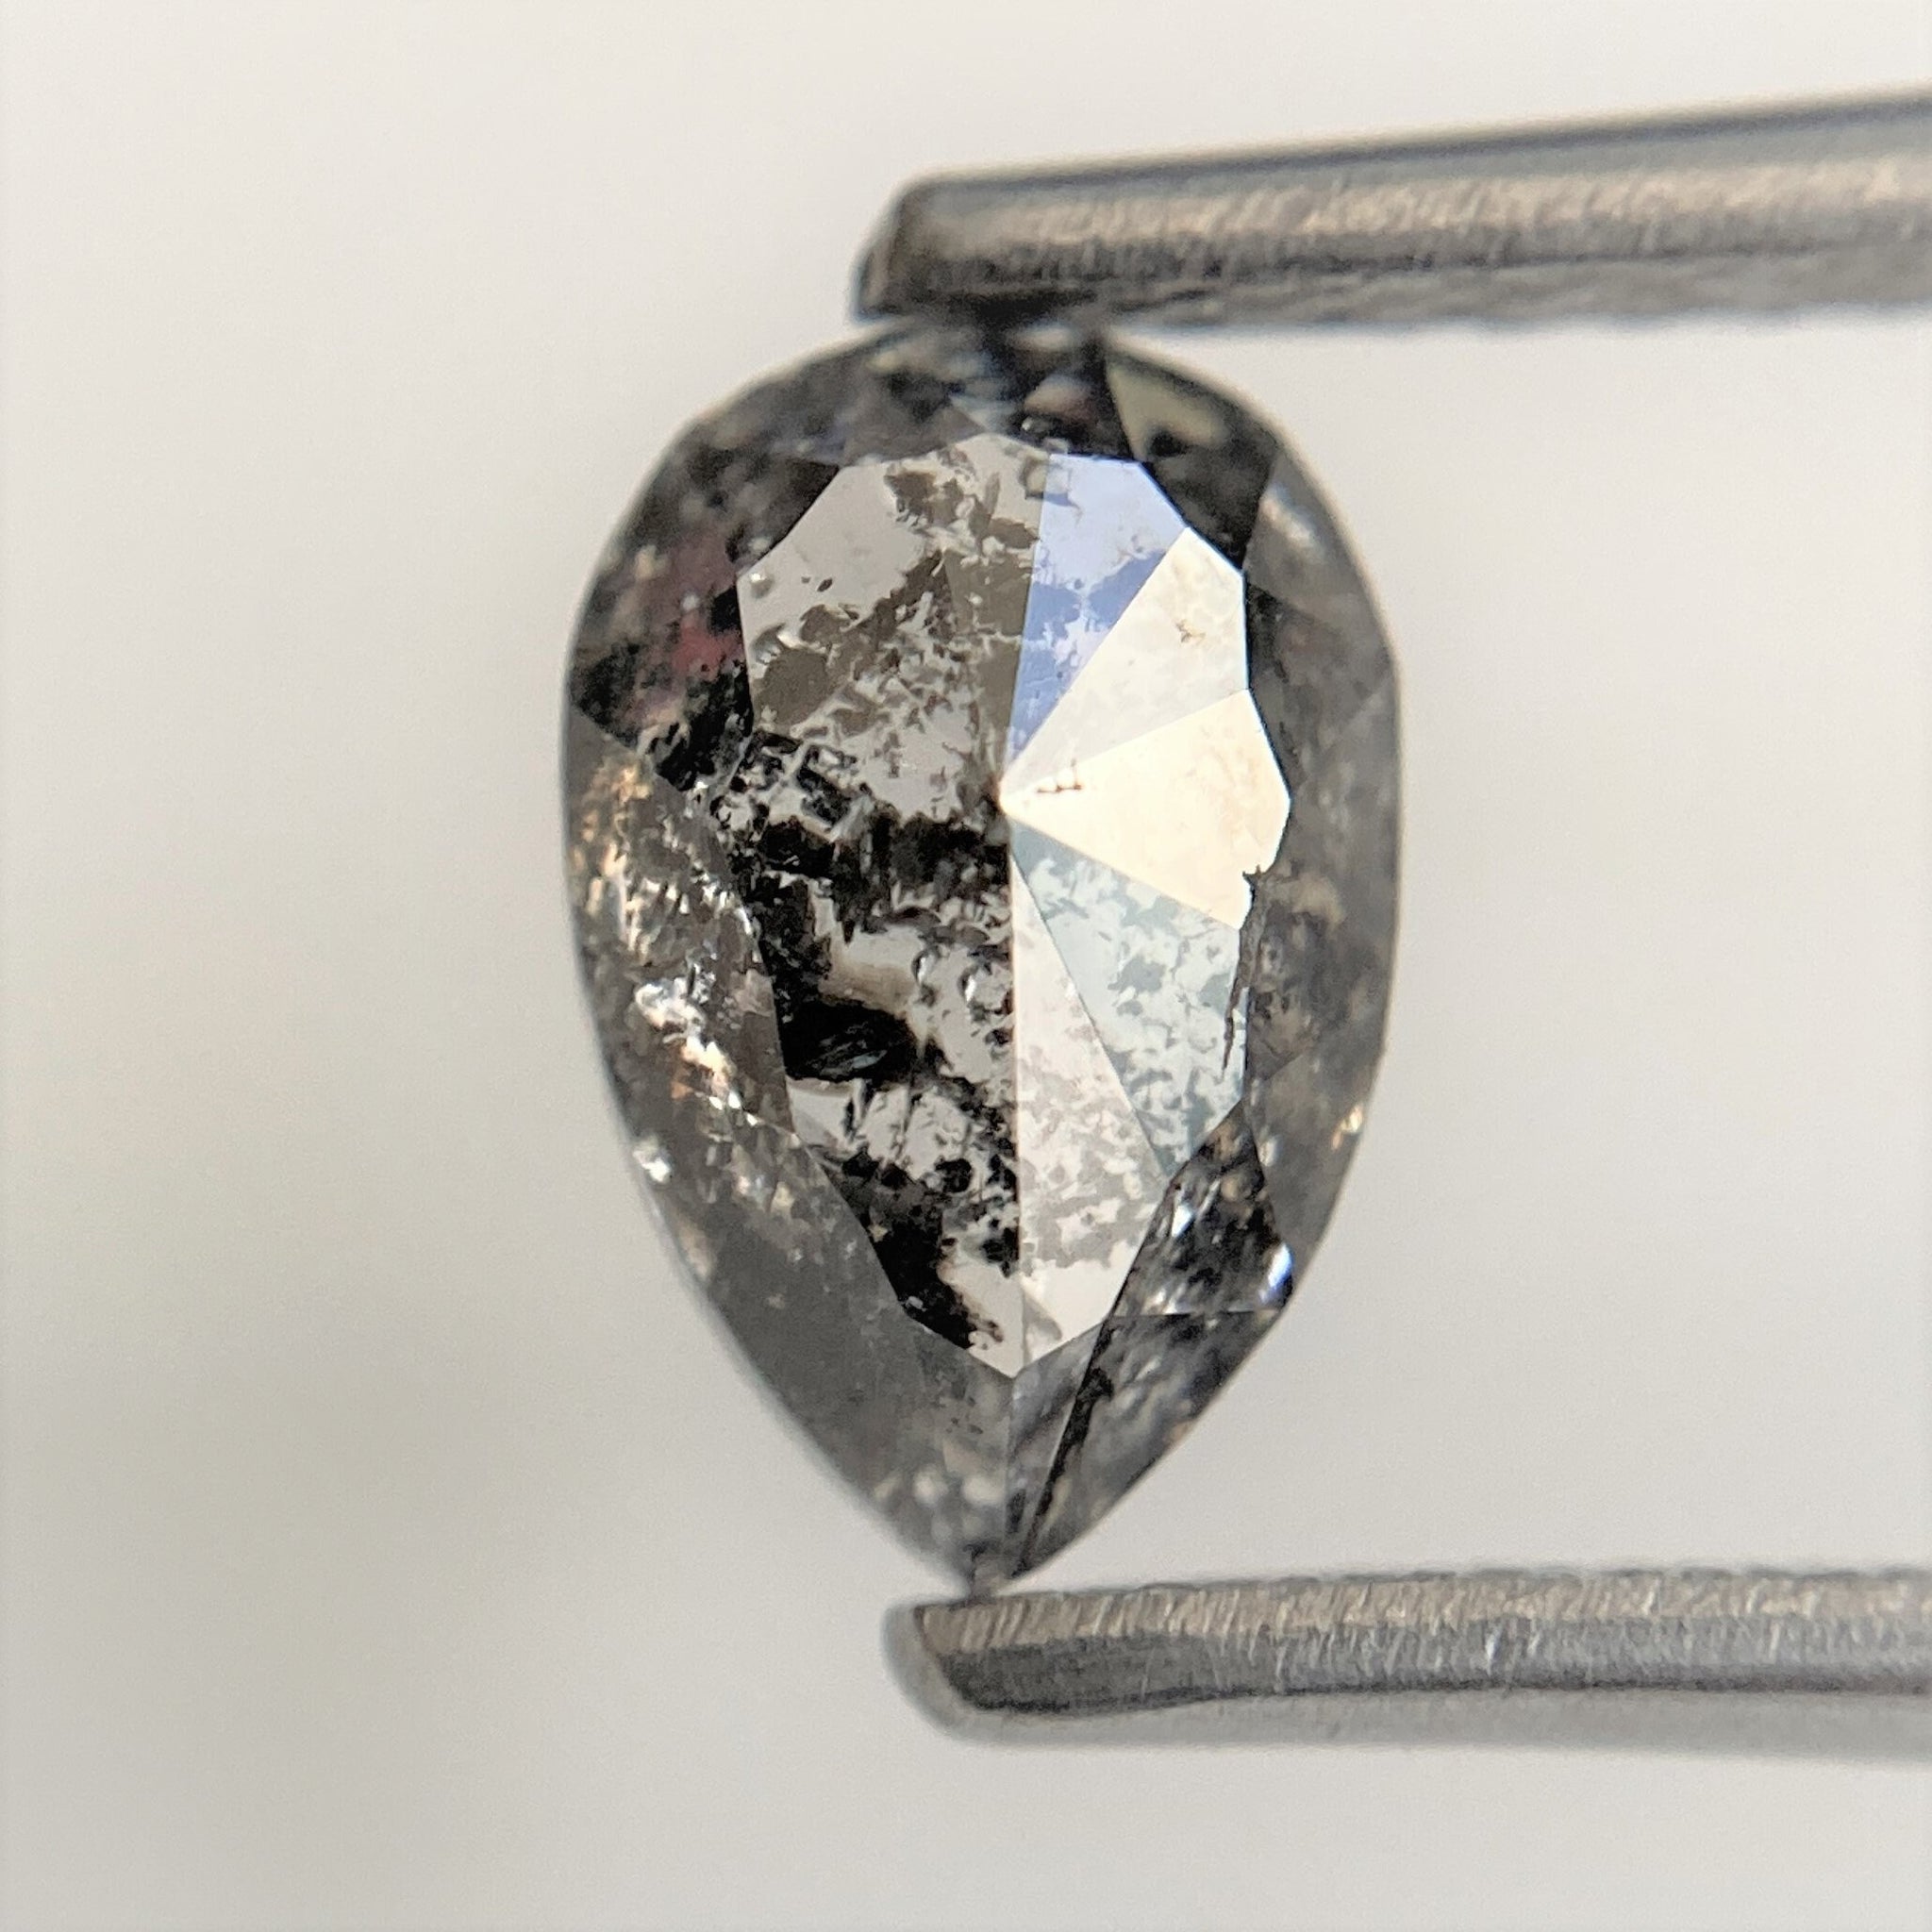 1.22 Ct Pear Cut Loose Natural Diamond Dark Grey Color 7.89 x 5.26 x 3.46 mm, Grey Rose Cut Pear Natural Loose Diamond best for Ring SJ93/52